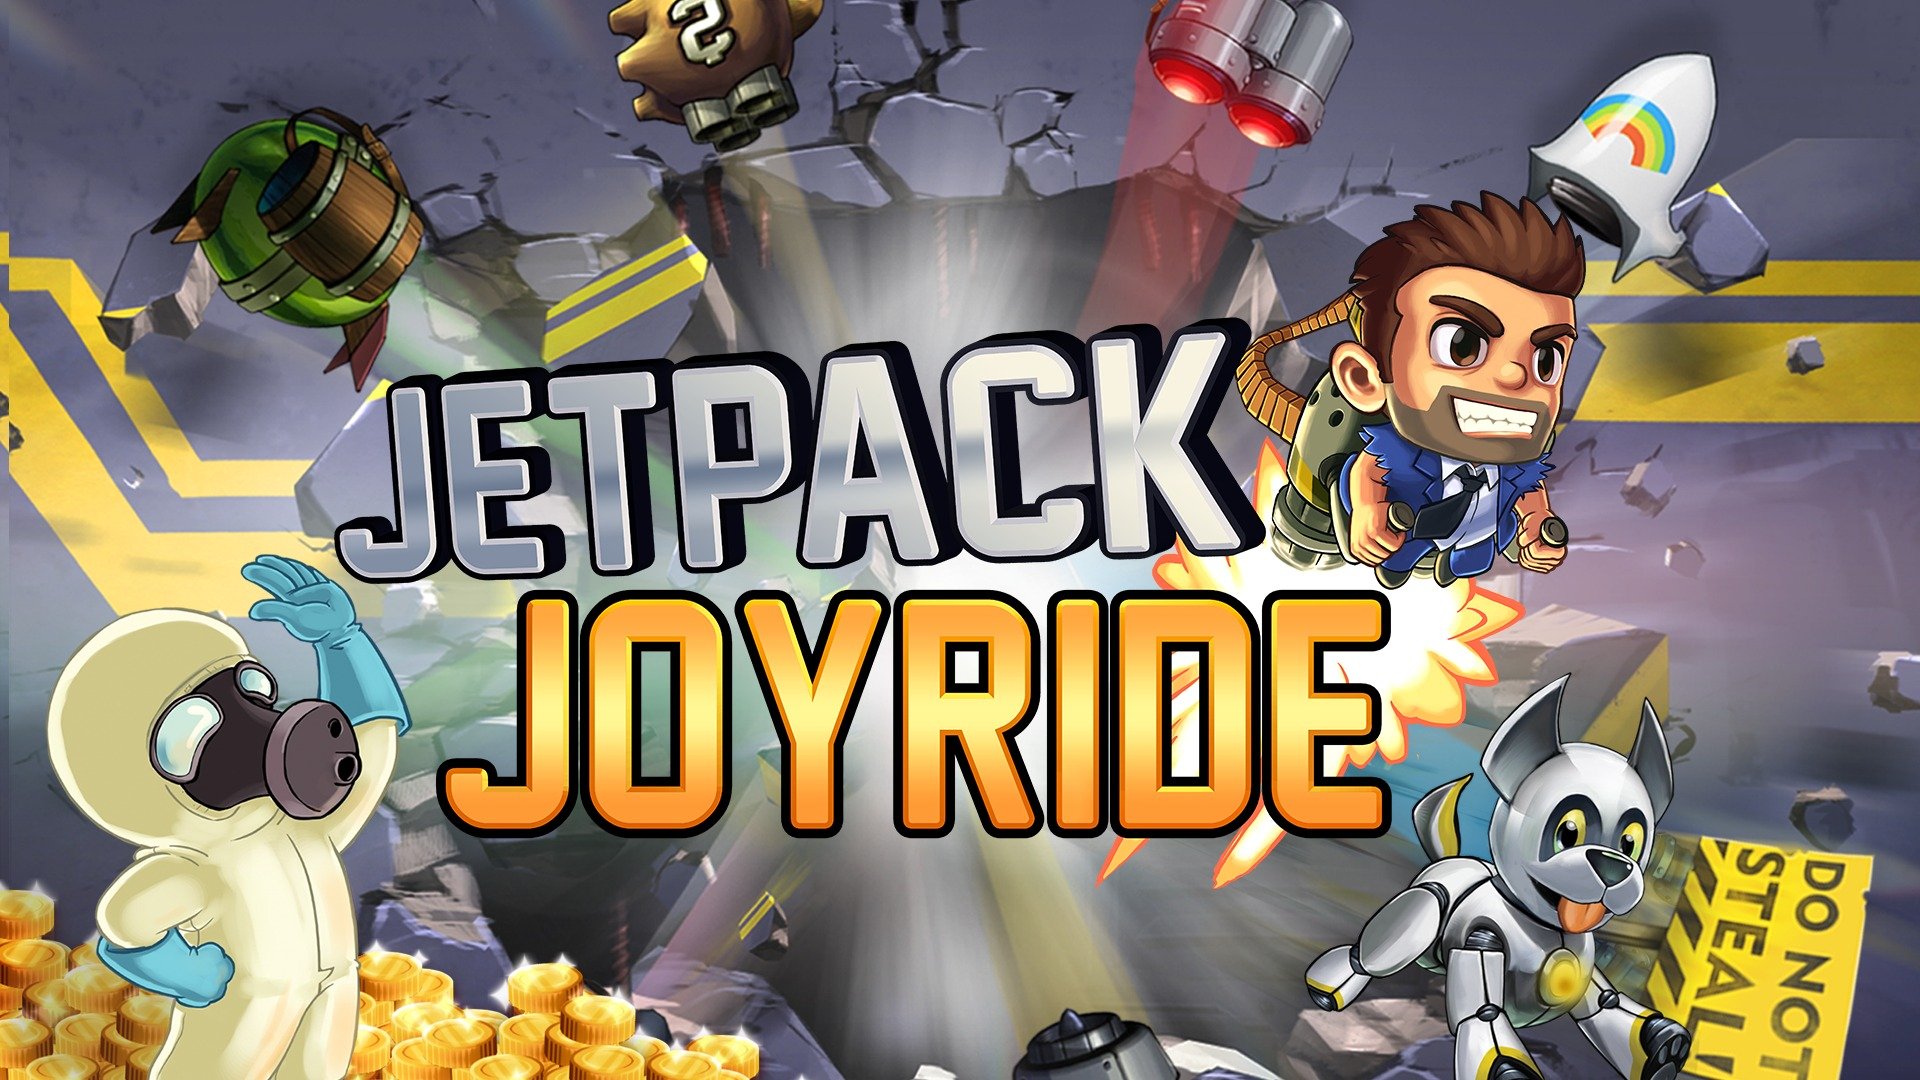 Jetpack Joyride Apk Mod Unlimited Coins